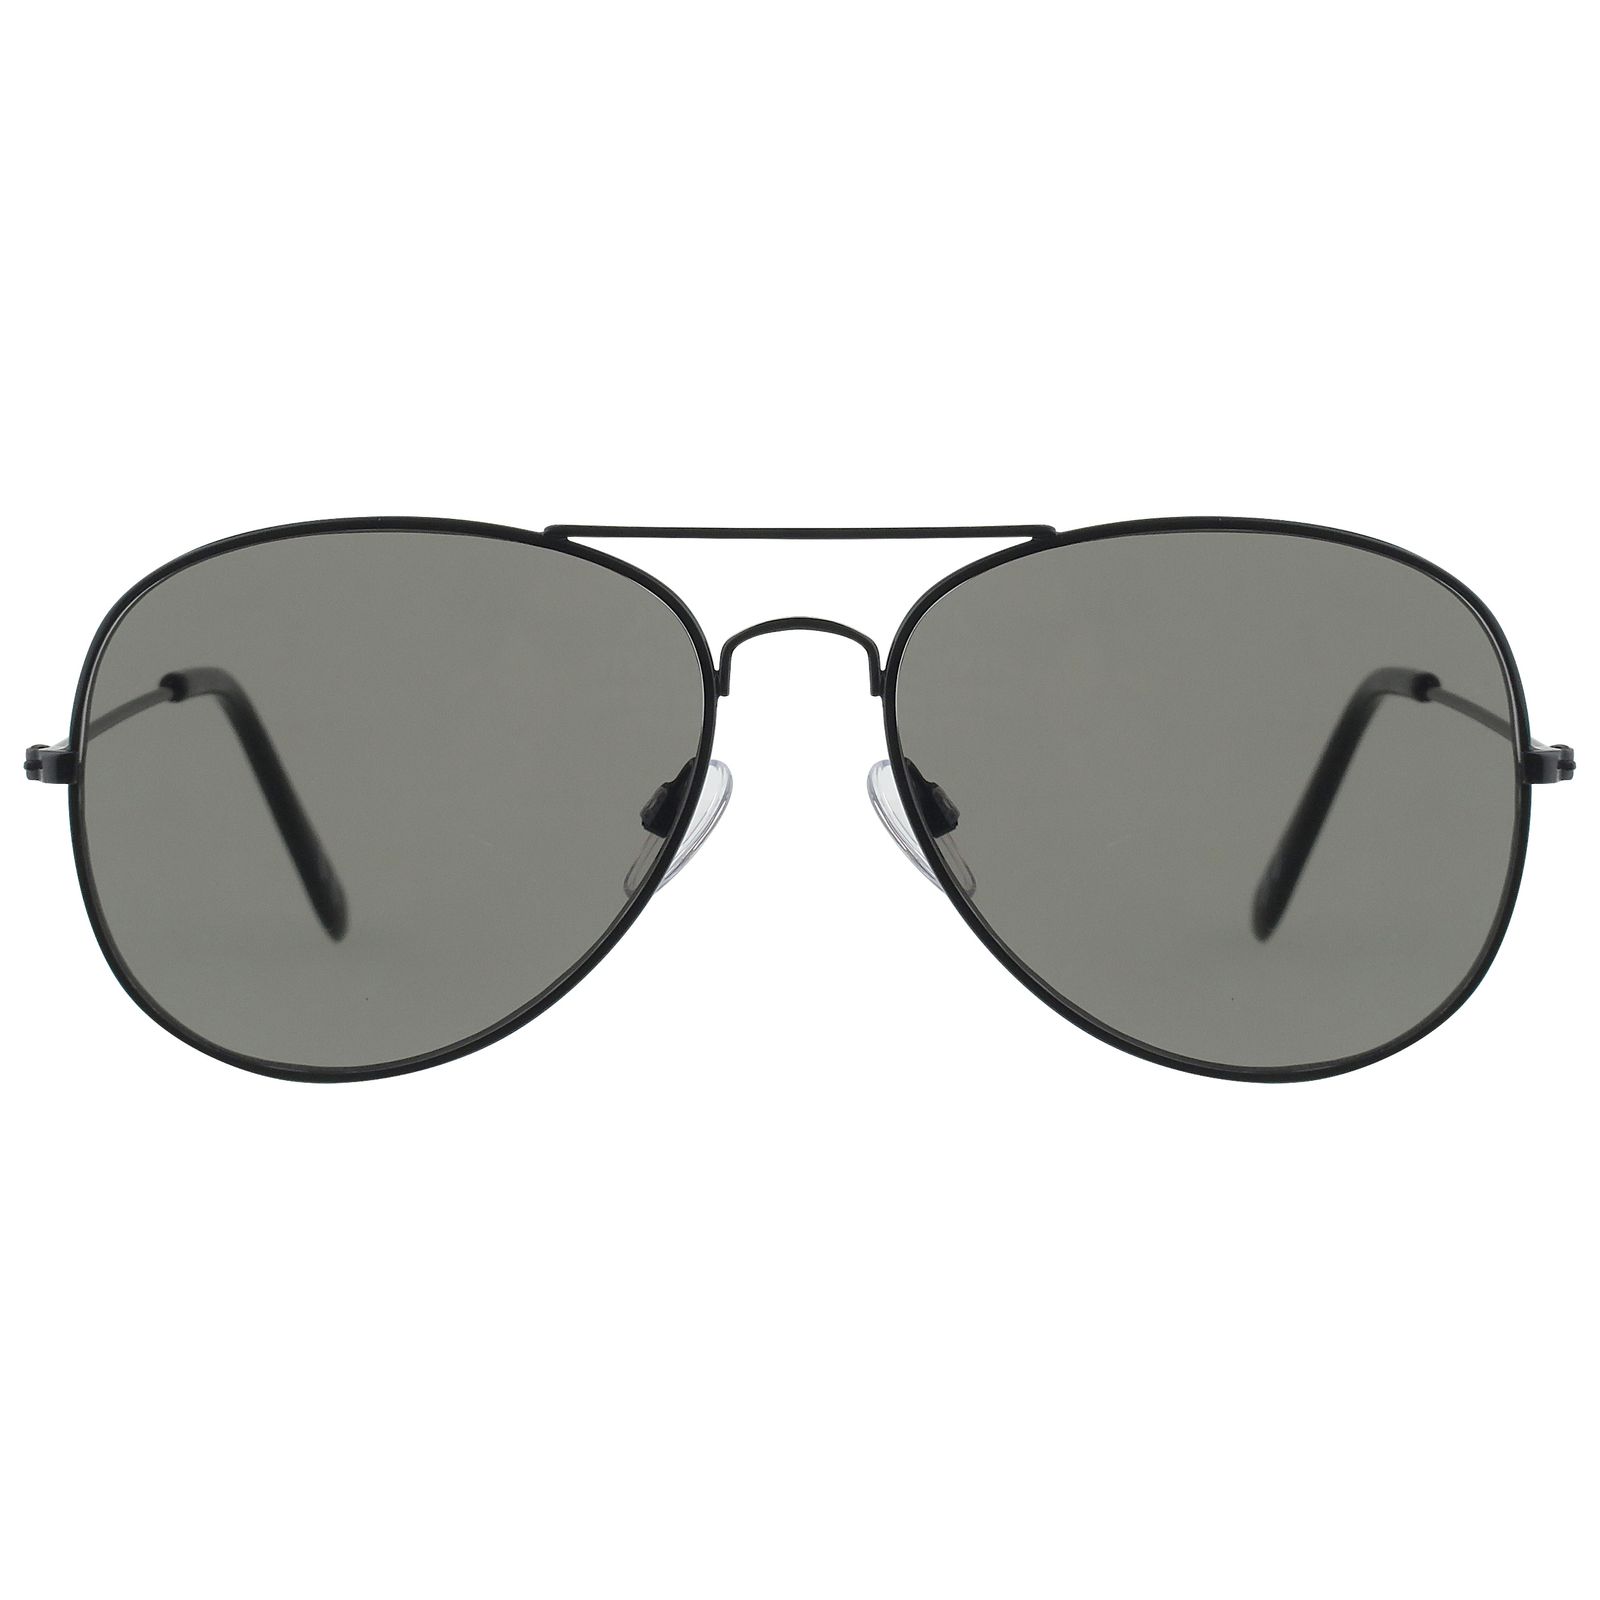 عینک آفتابی مدل 001 -  - 2